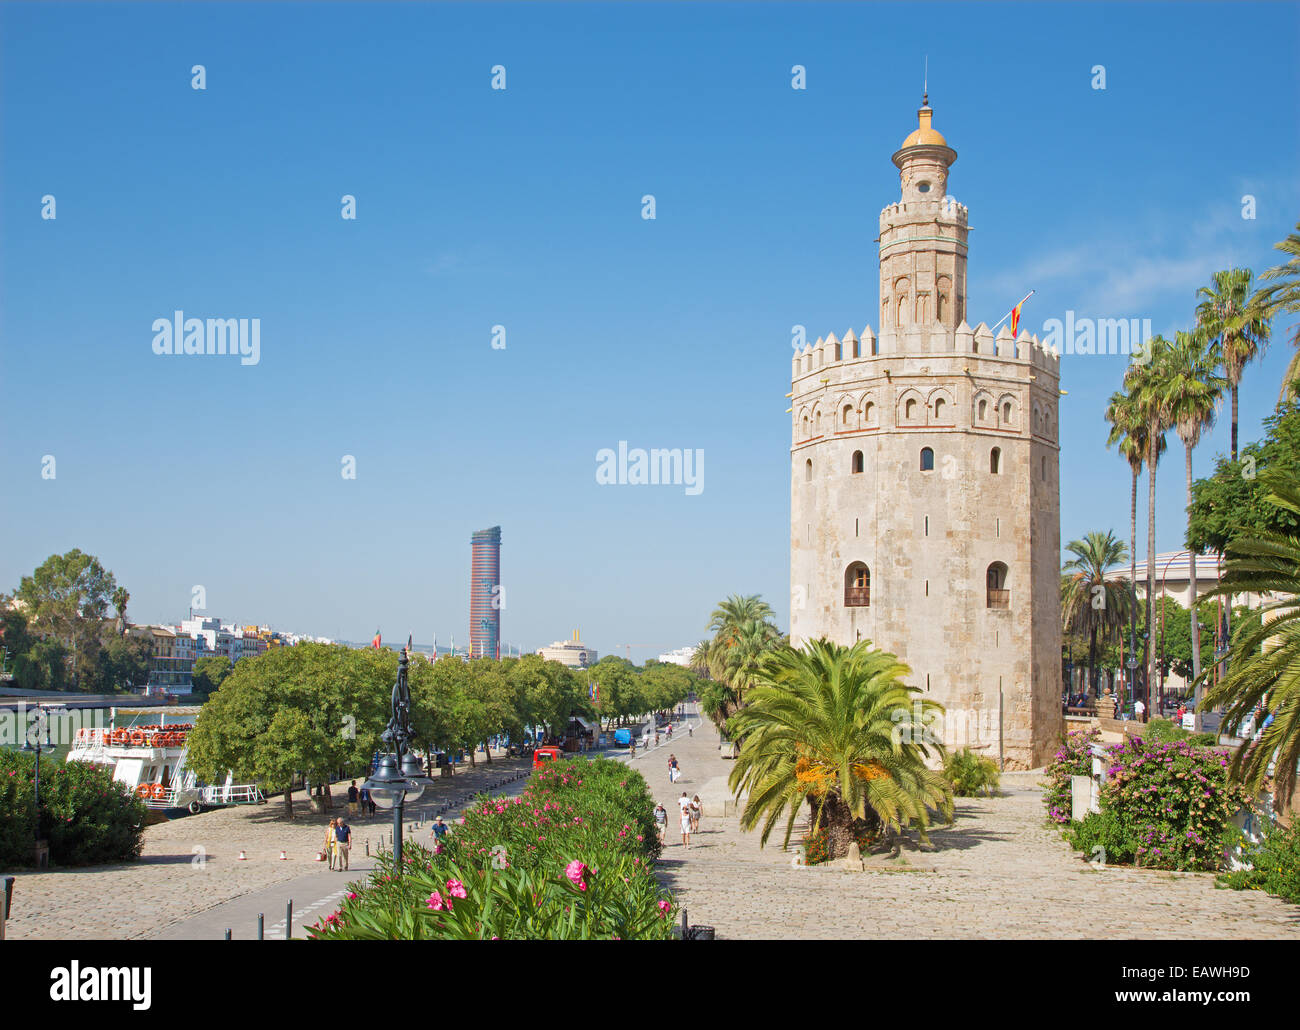 Sevilla, Spanien - 29. Oktober 2014: Der mittelalterliche Turm Torre del Oro, Promenade und moderne Torre Cajasol im Hintergrund. Stockfoto